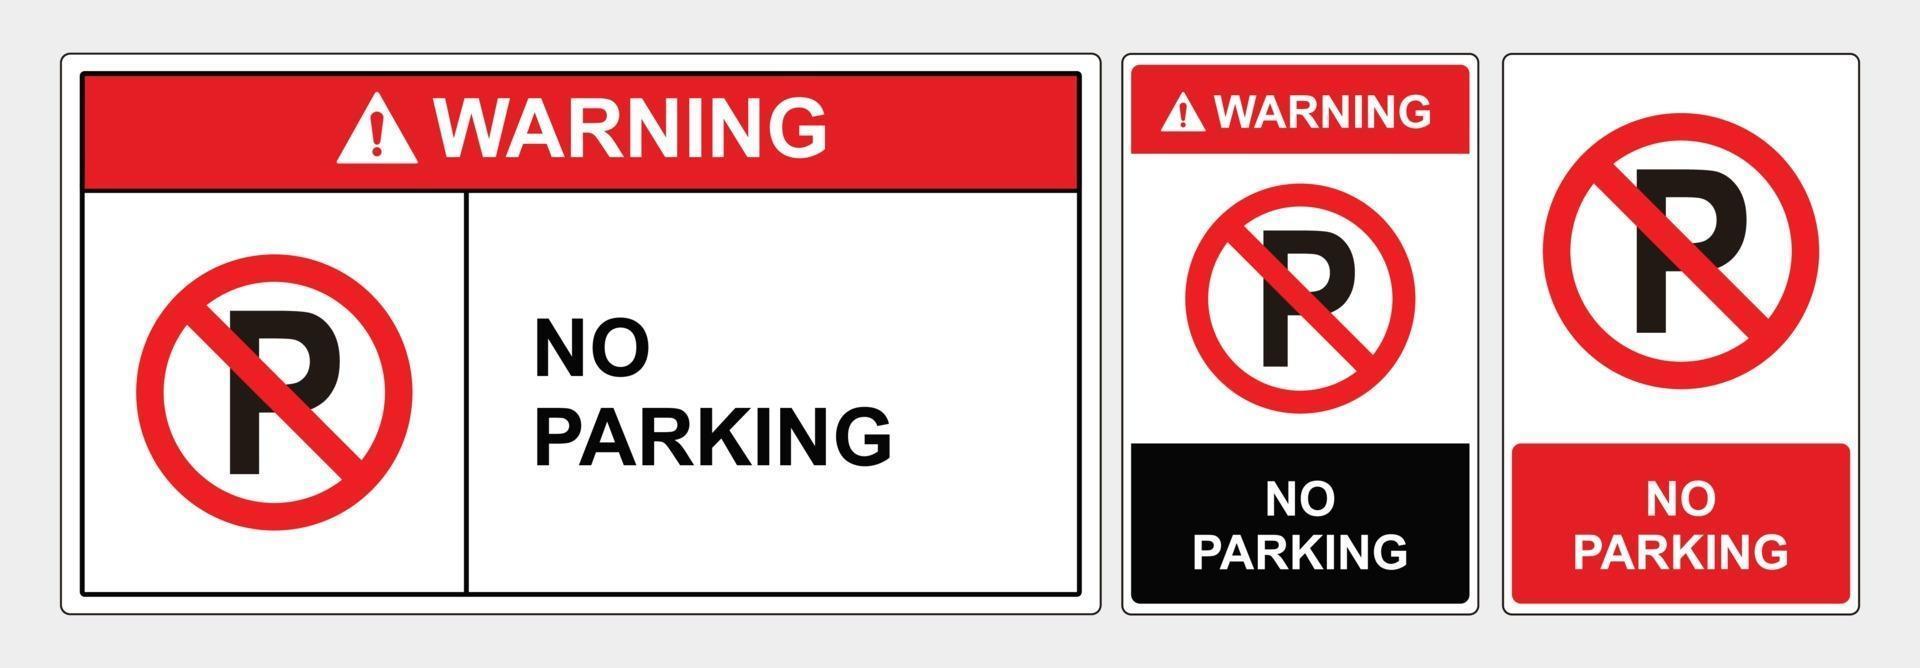 señal de seguridad no parking, formatos estándar ansi y osha. vector